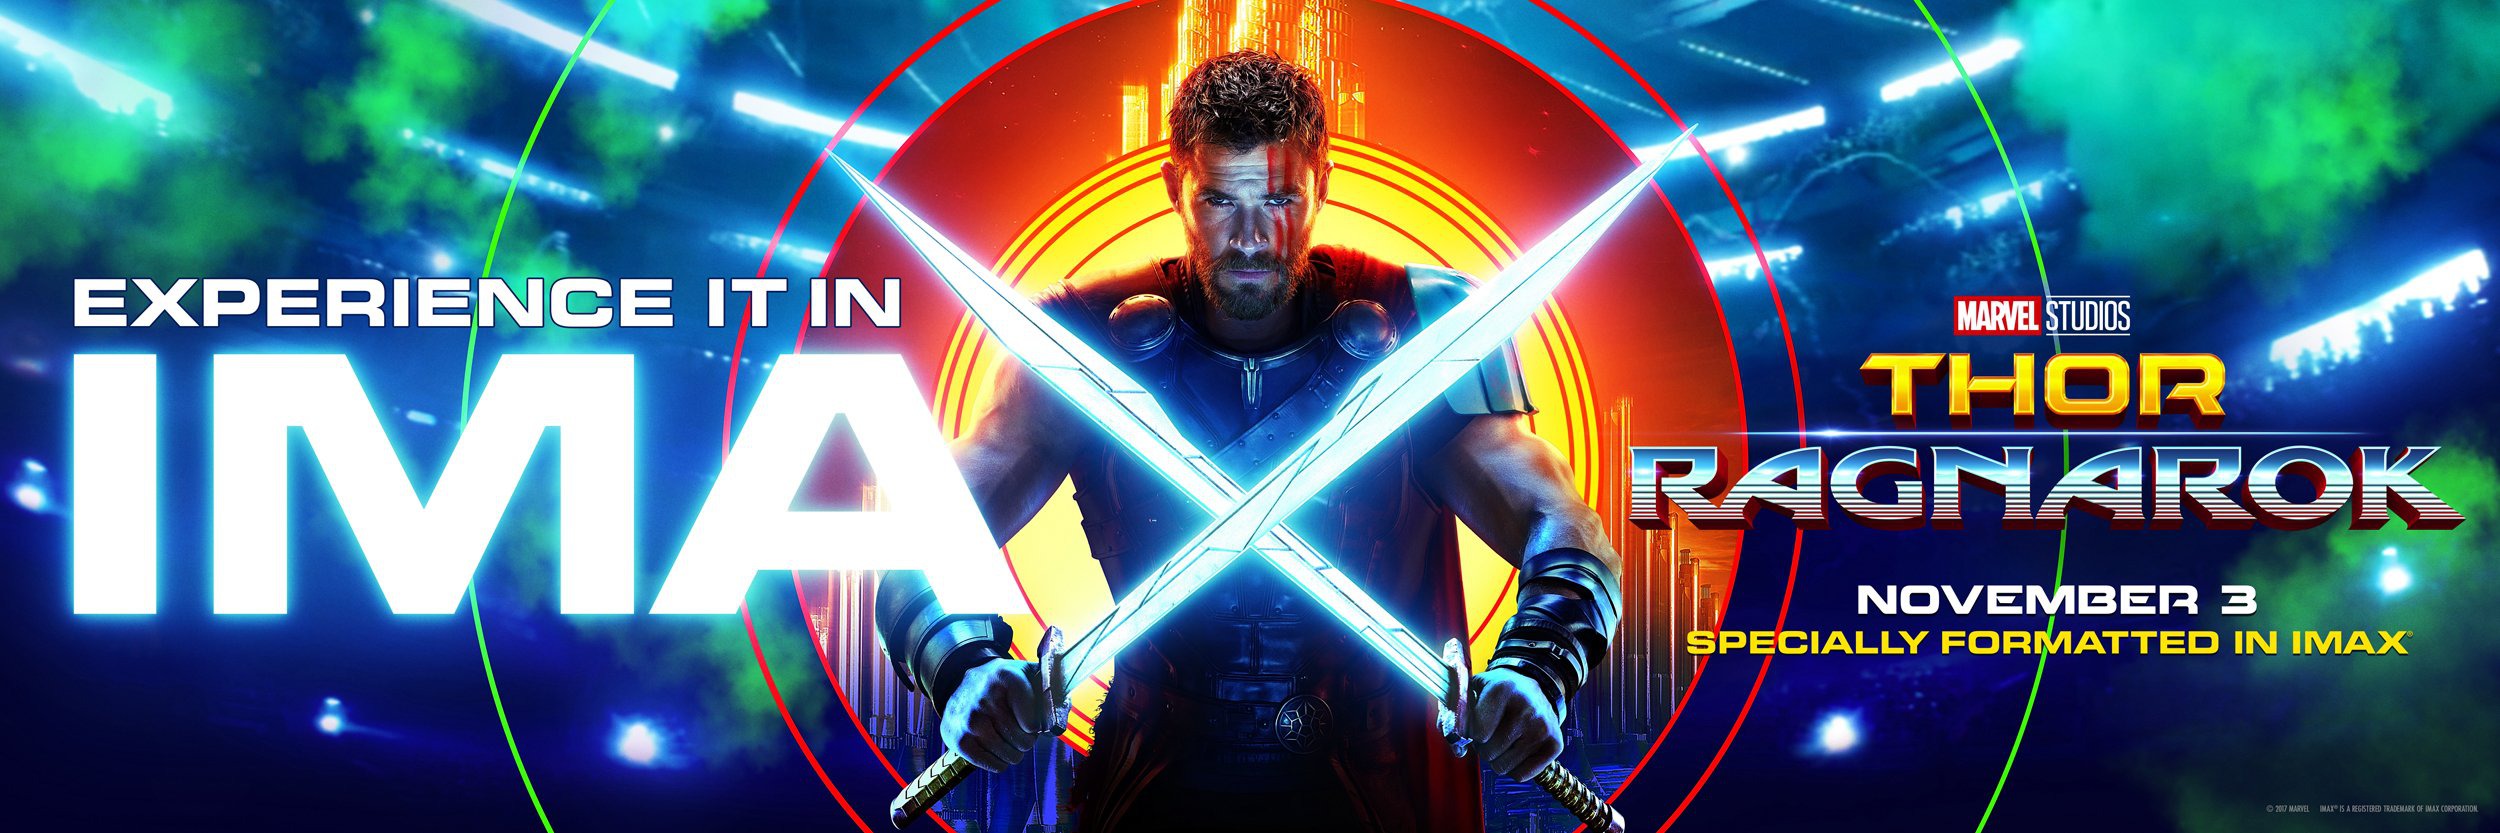 Mega Sized Movie Poster Image for Thor: Ragnarök (#17 of 29)